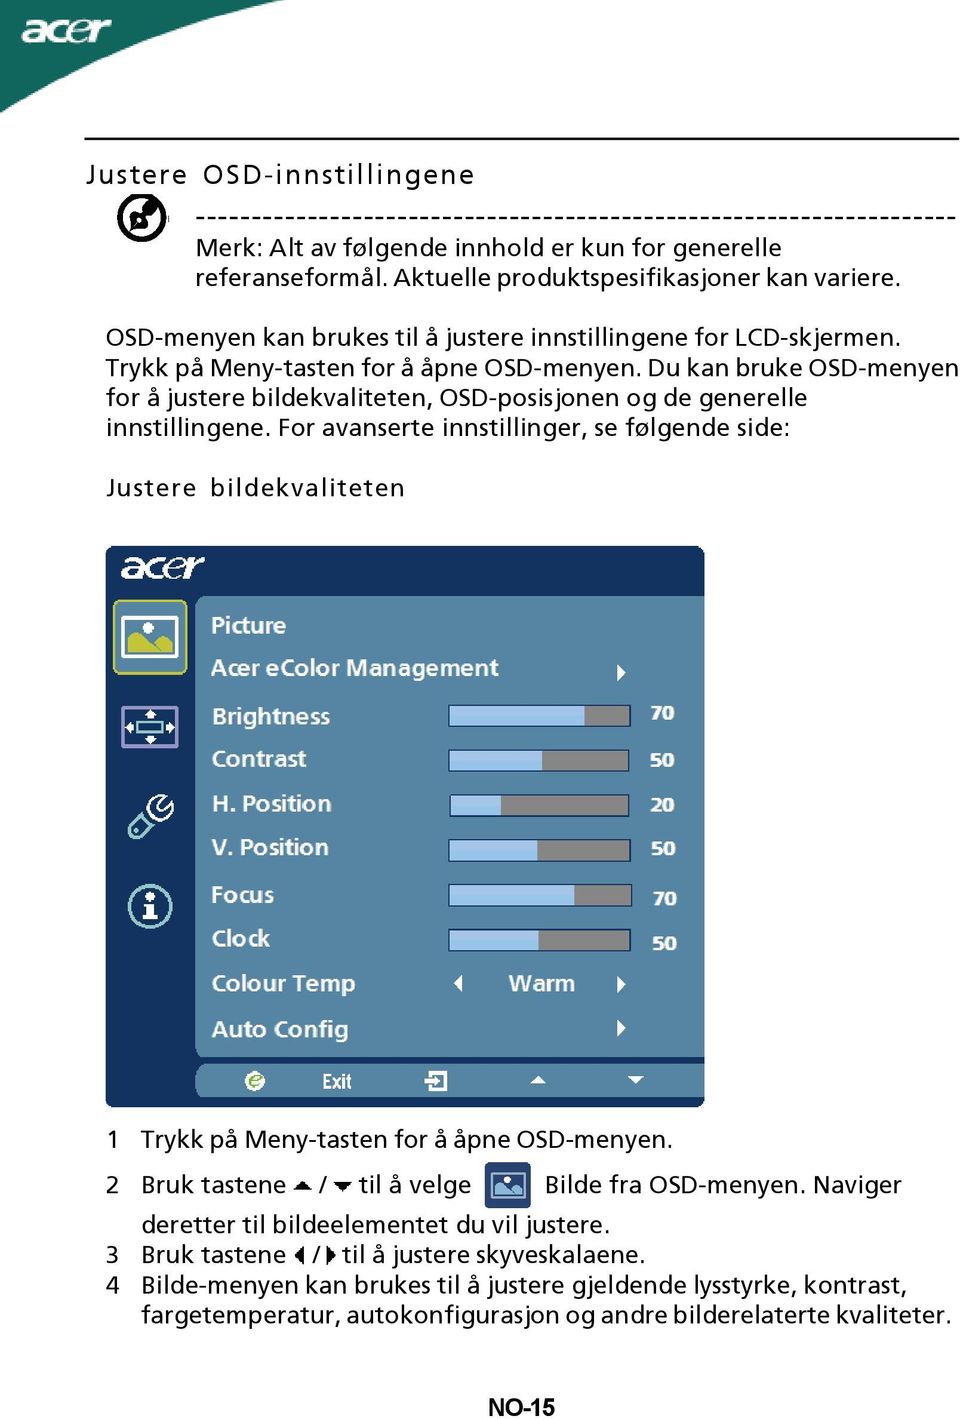 Du kan bruke OSD-menyen for å justere bildekvaliteten, OSD-posisjonen og de generelle innstillingene.